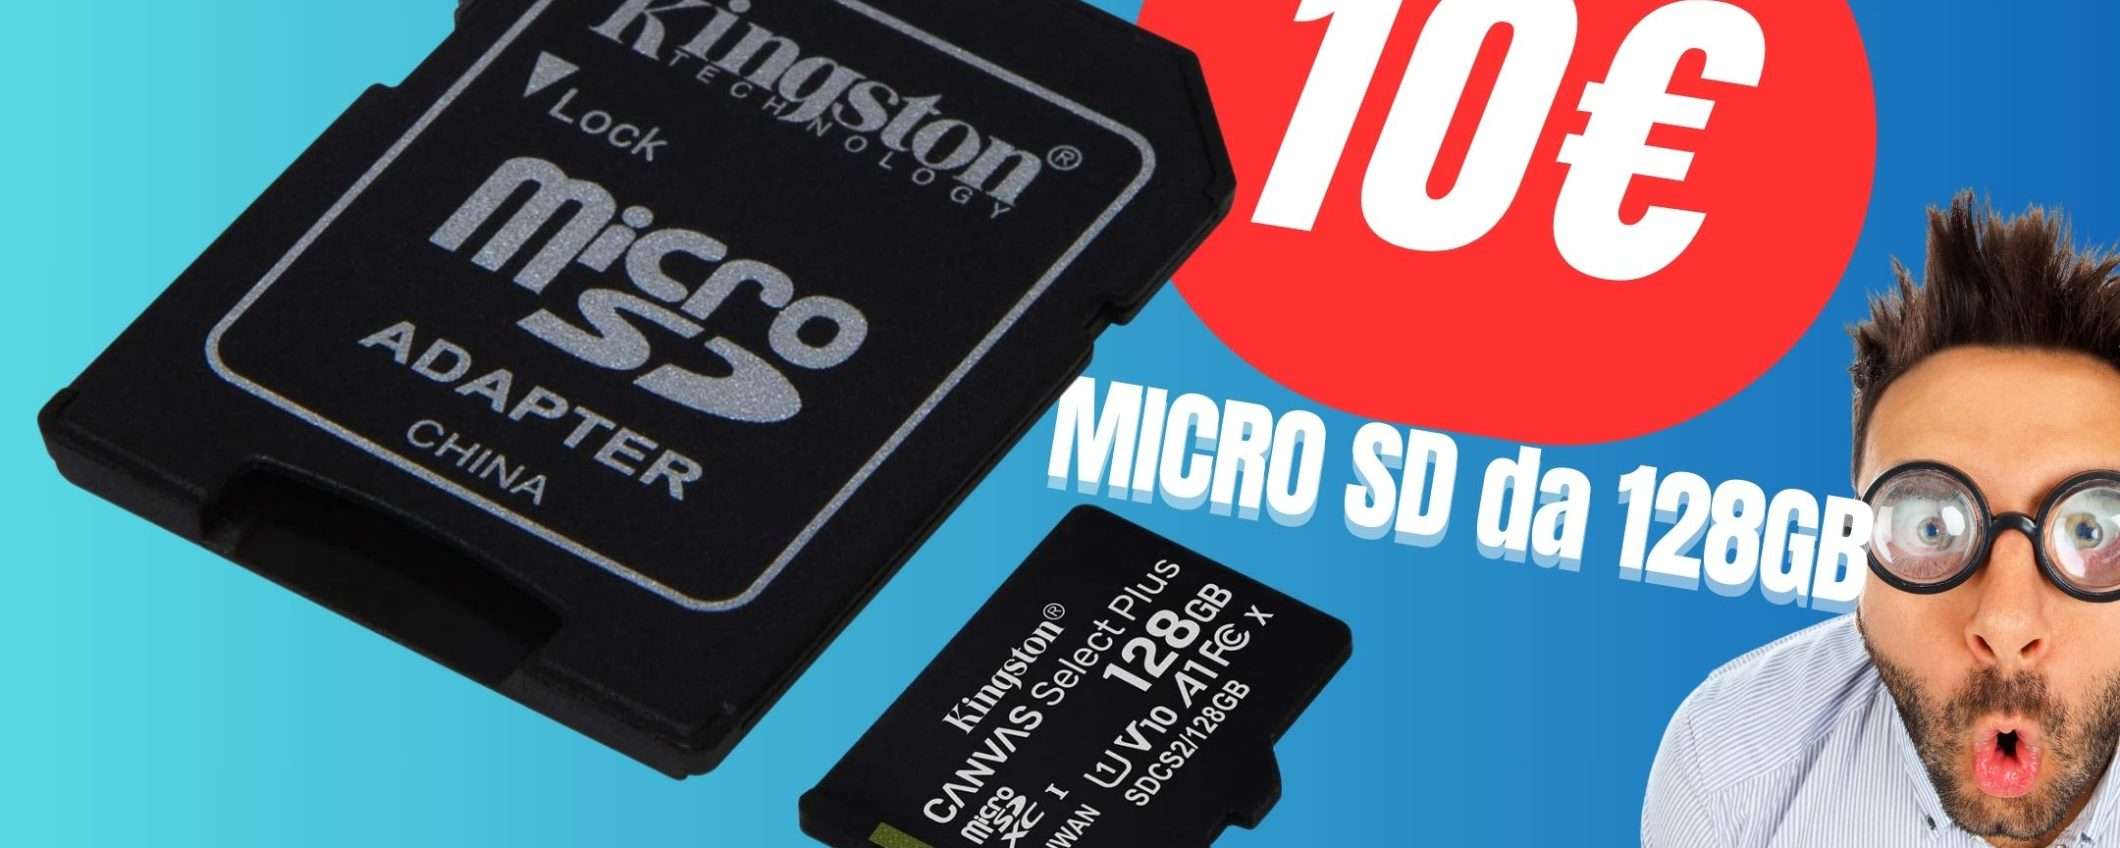 SCONTO FOLLE per questa MicroSD da 128GB a soli 10€! Approfittane subito